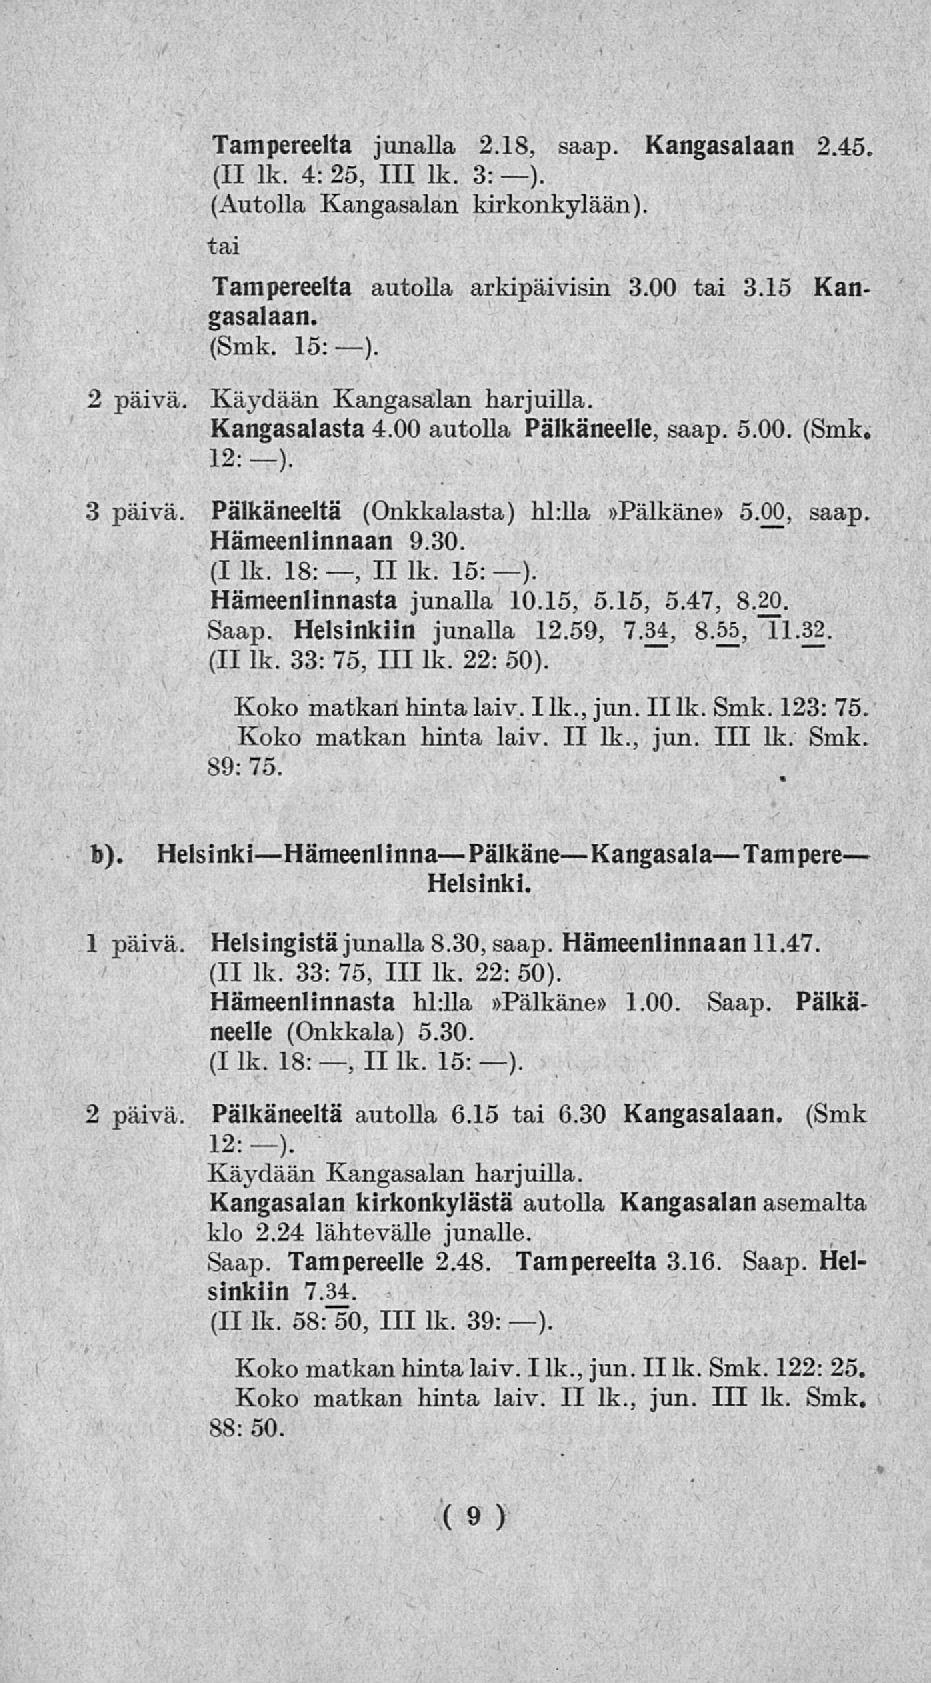 * Tampereelta junalla 2.18, saap. Kangasalaan 2.45. (II lk. 4: 25, 111 lk. 3:-). (Autolla Kangasalan kirkonkylään). tai Tampereelta autolla gasalaan. (Smk. 15:). arkipäivisin 3.00 tai 3.